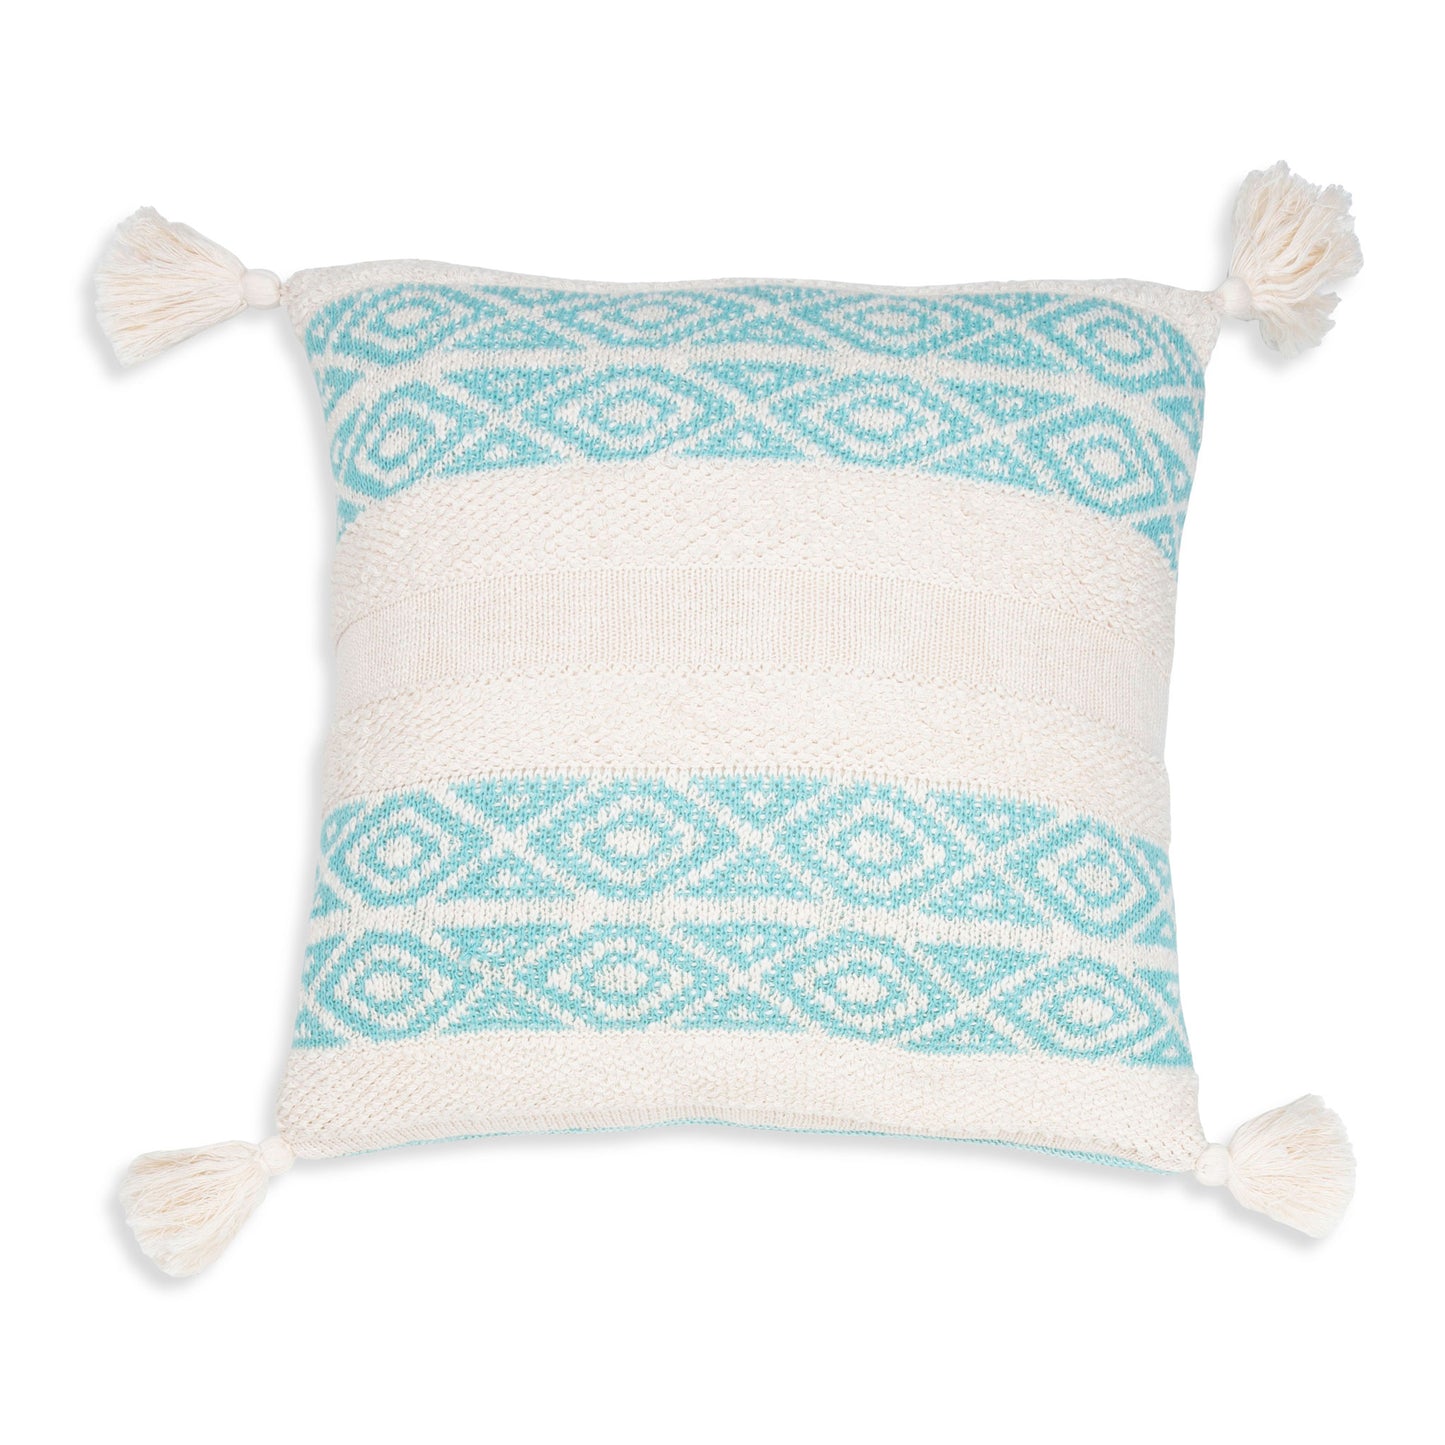 Necalli 18X18" Reversible Striped Cotton Throw Pillow